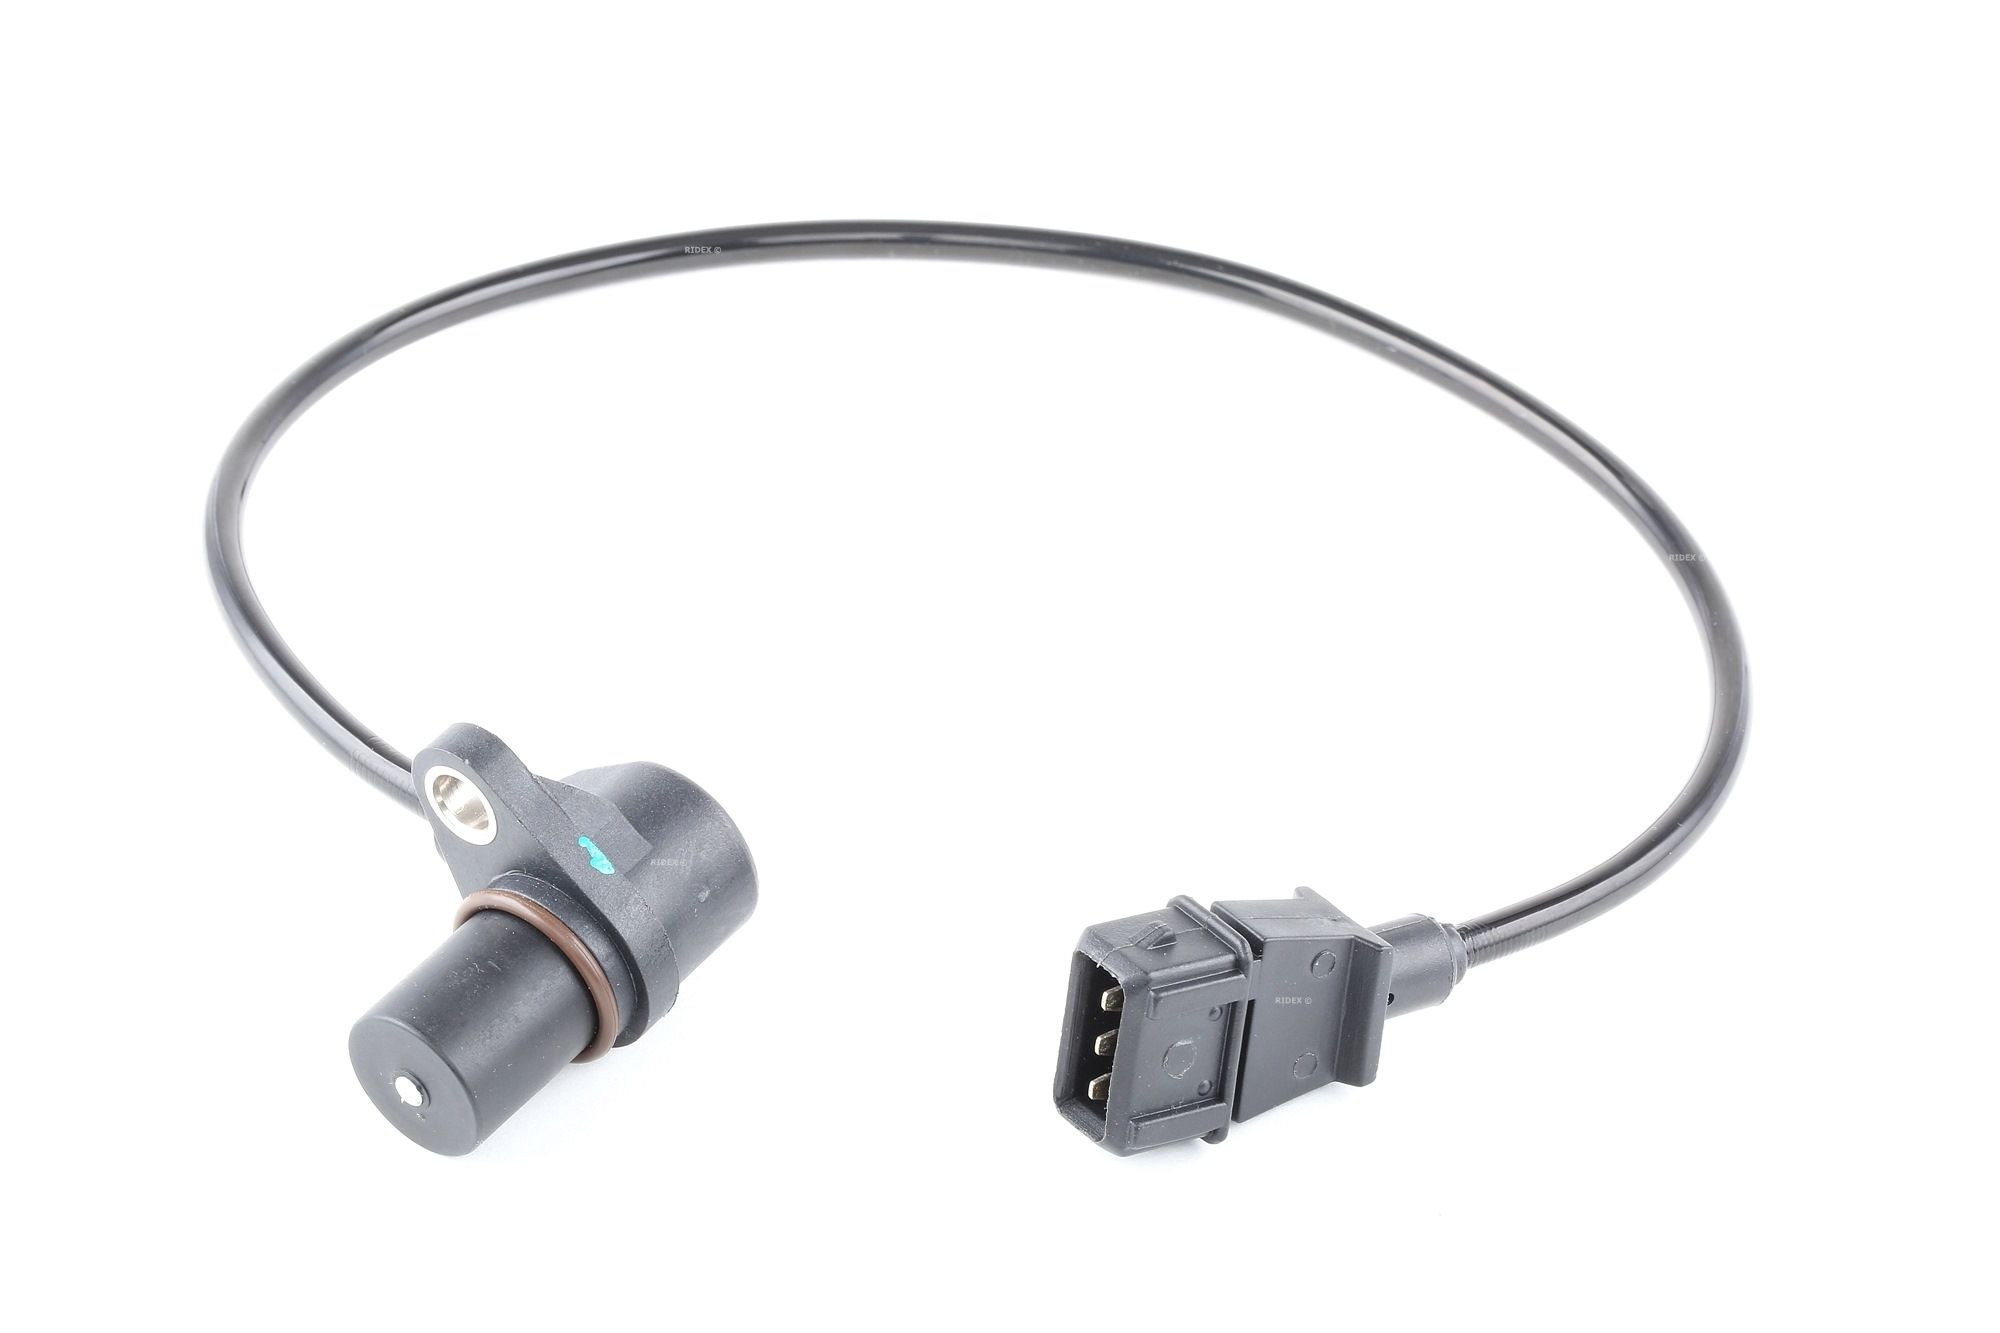 RIDEX 833C0100 Crankshaft sensor 3-pin connector, Inductive Sensor